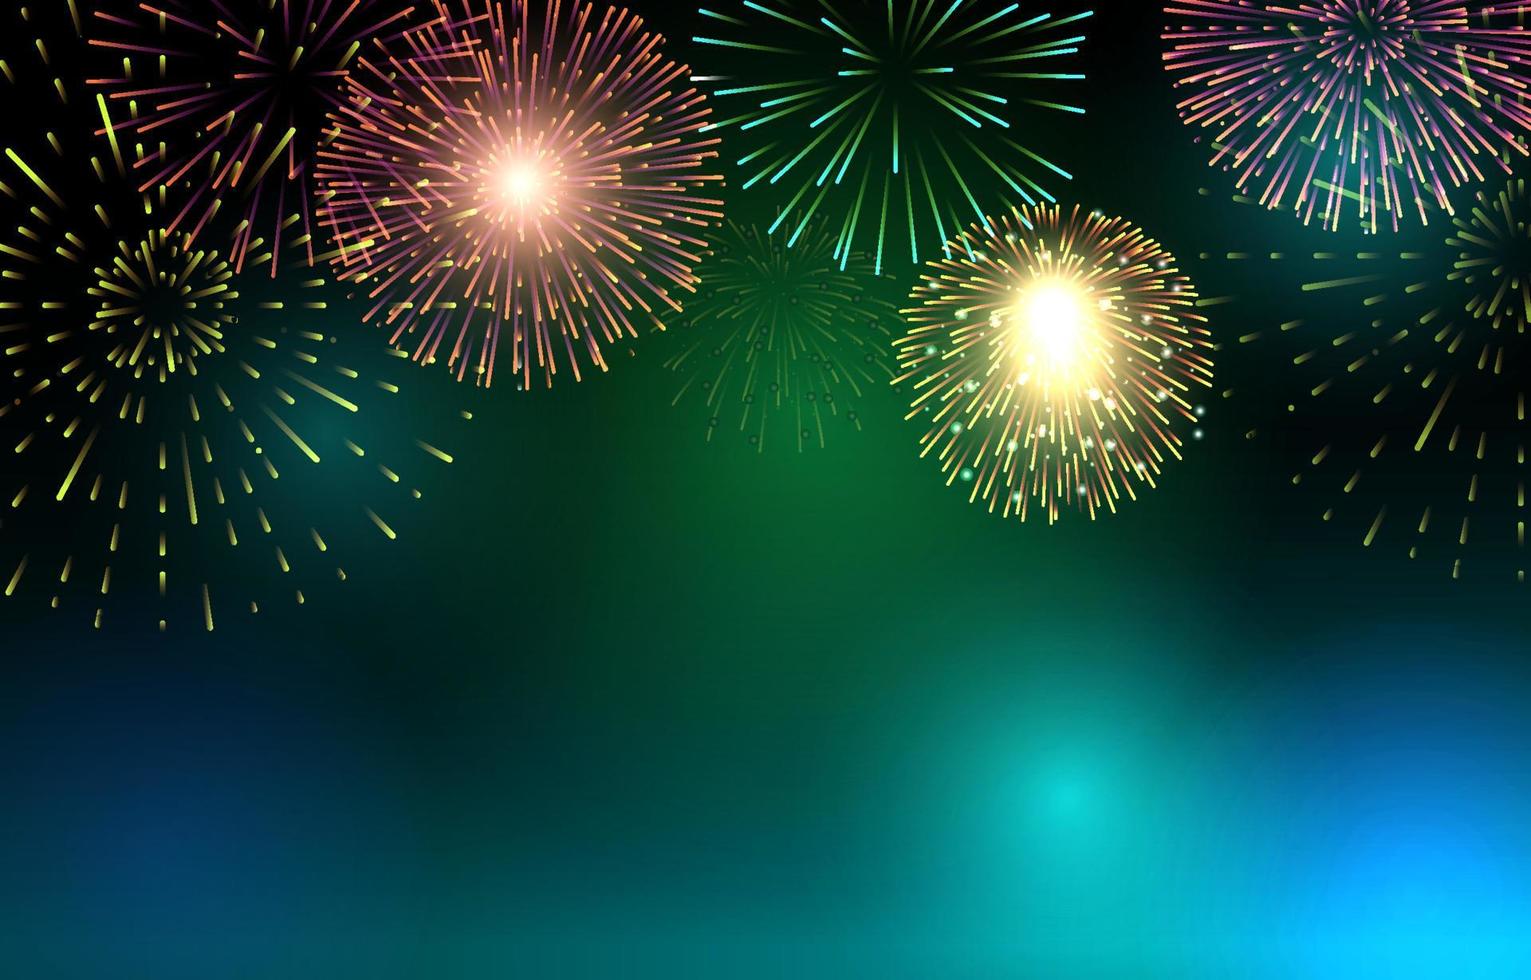 feliz ano novo festa de fogos de artifício brilhante fundo do céu noturno vetor